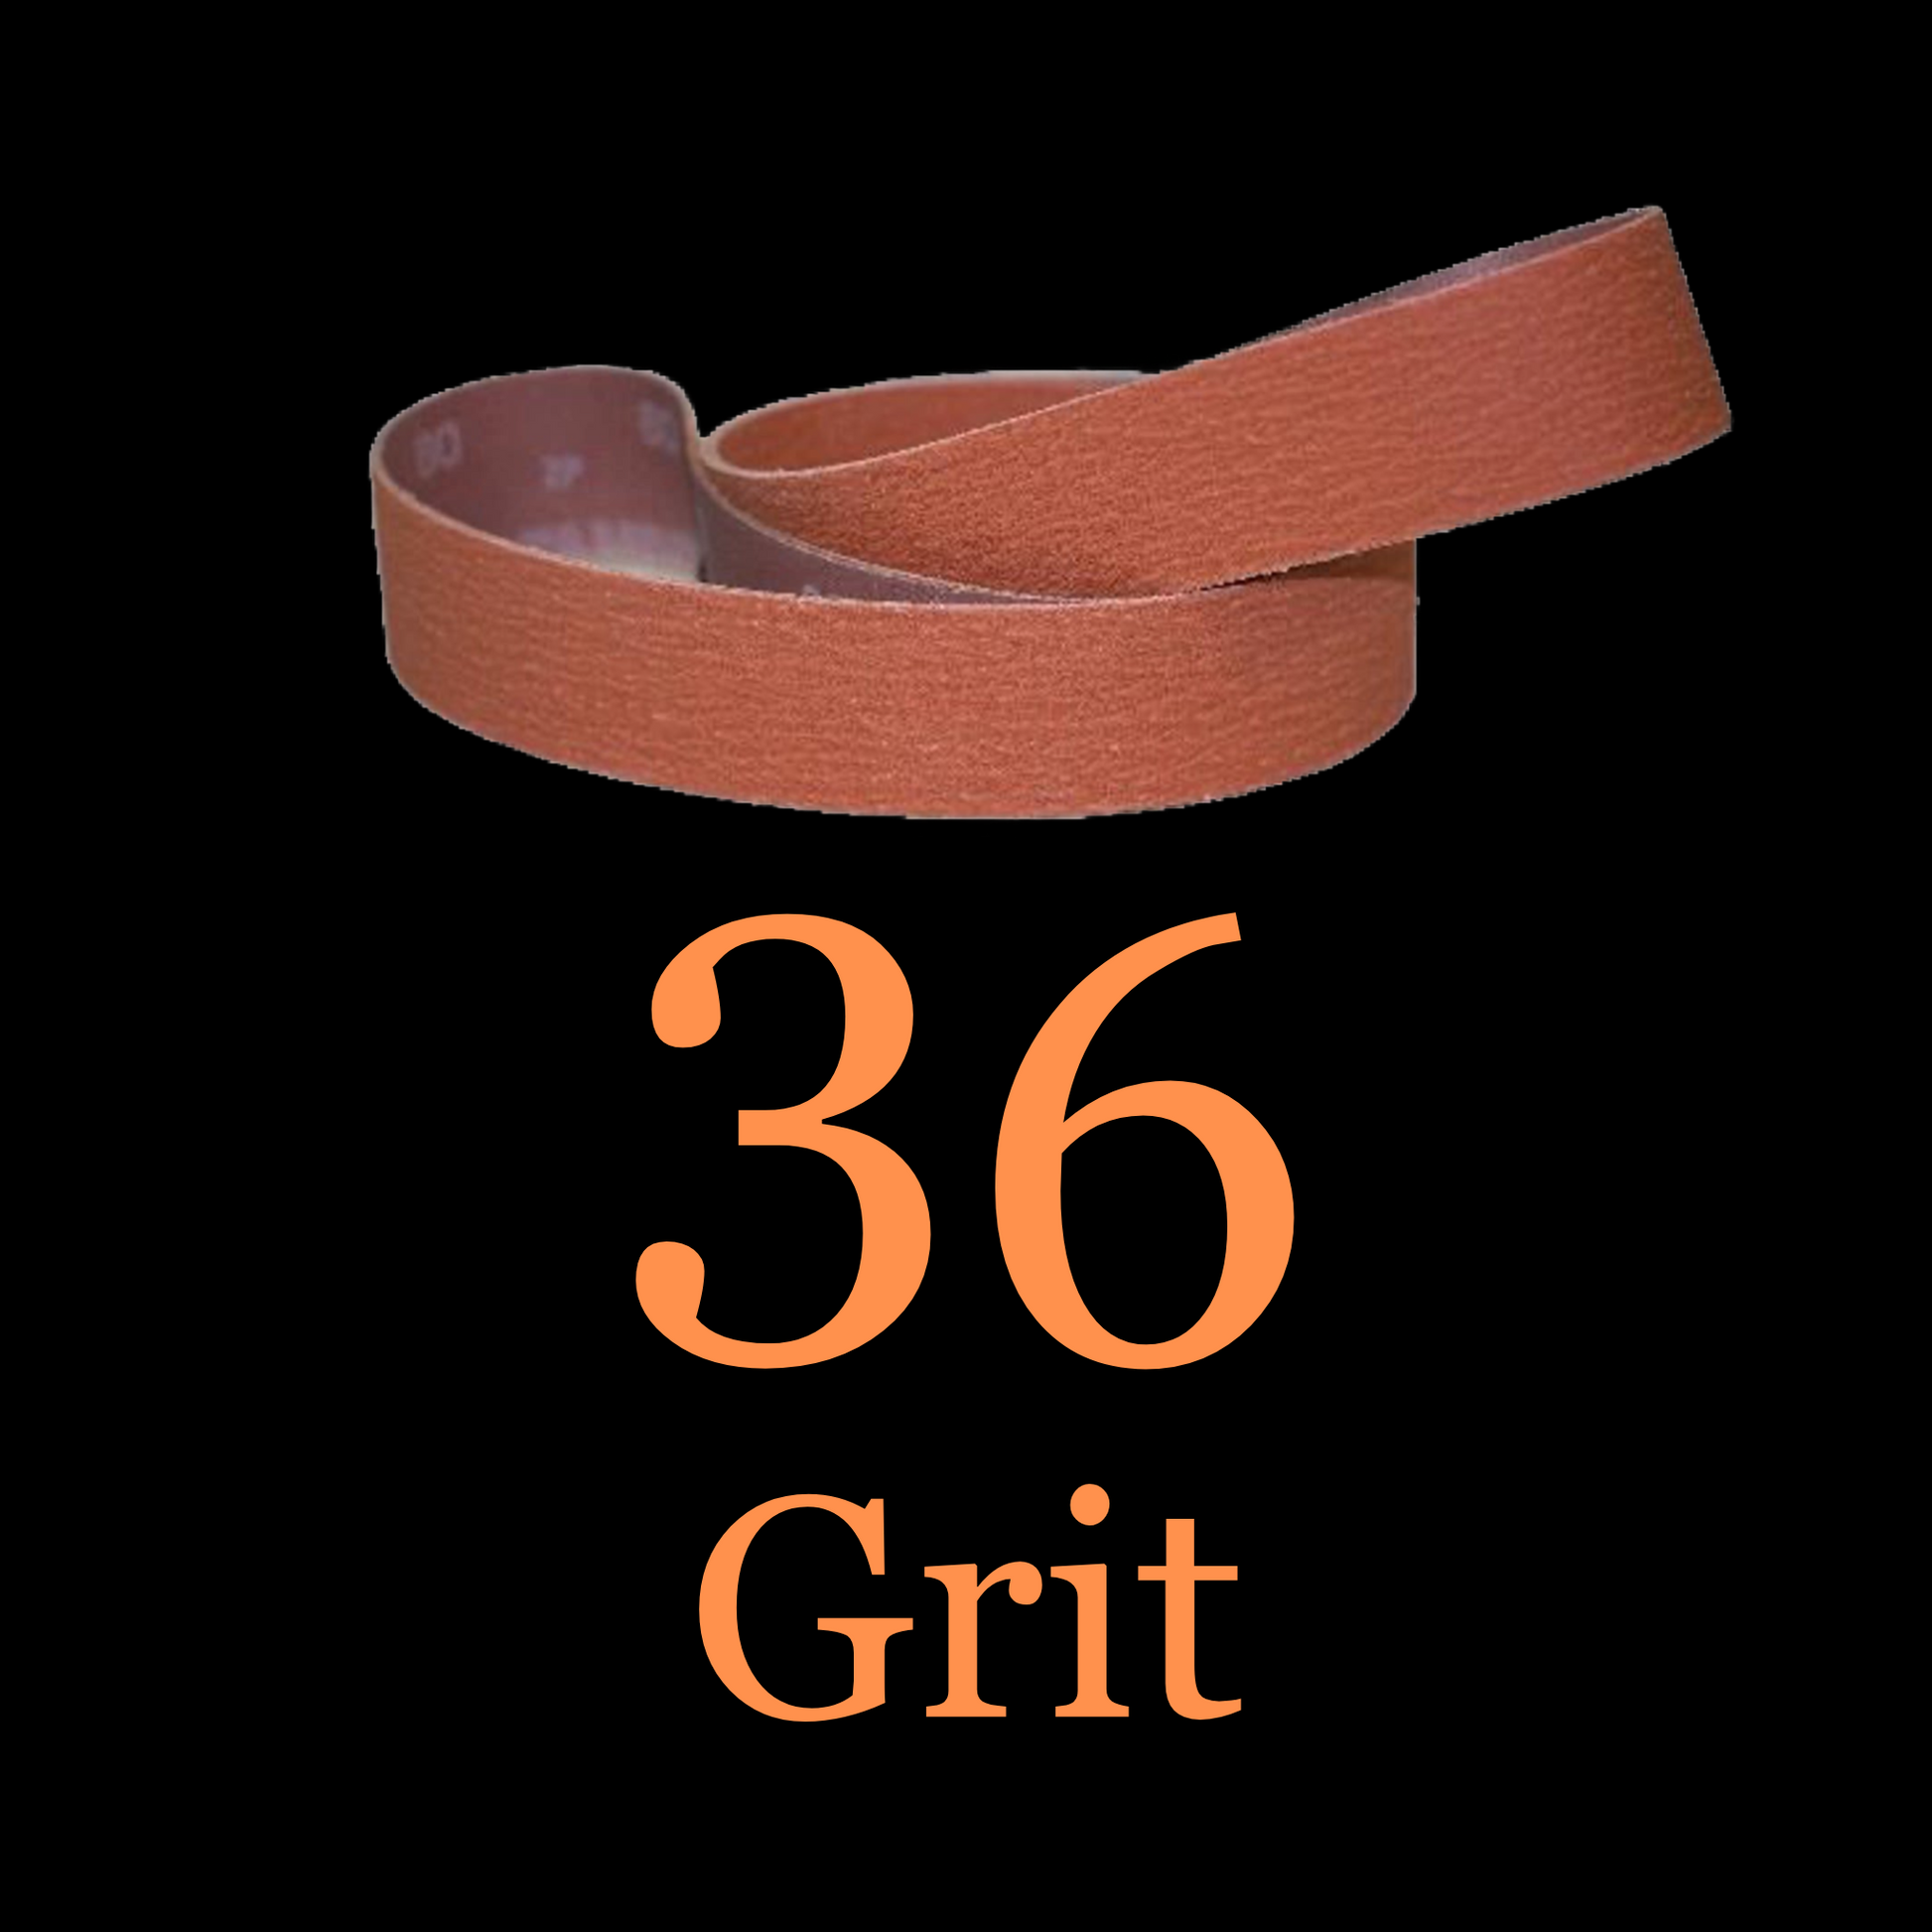 2” x 36” Ceramic Blaze Grinder Belt 36 Grit